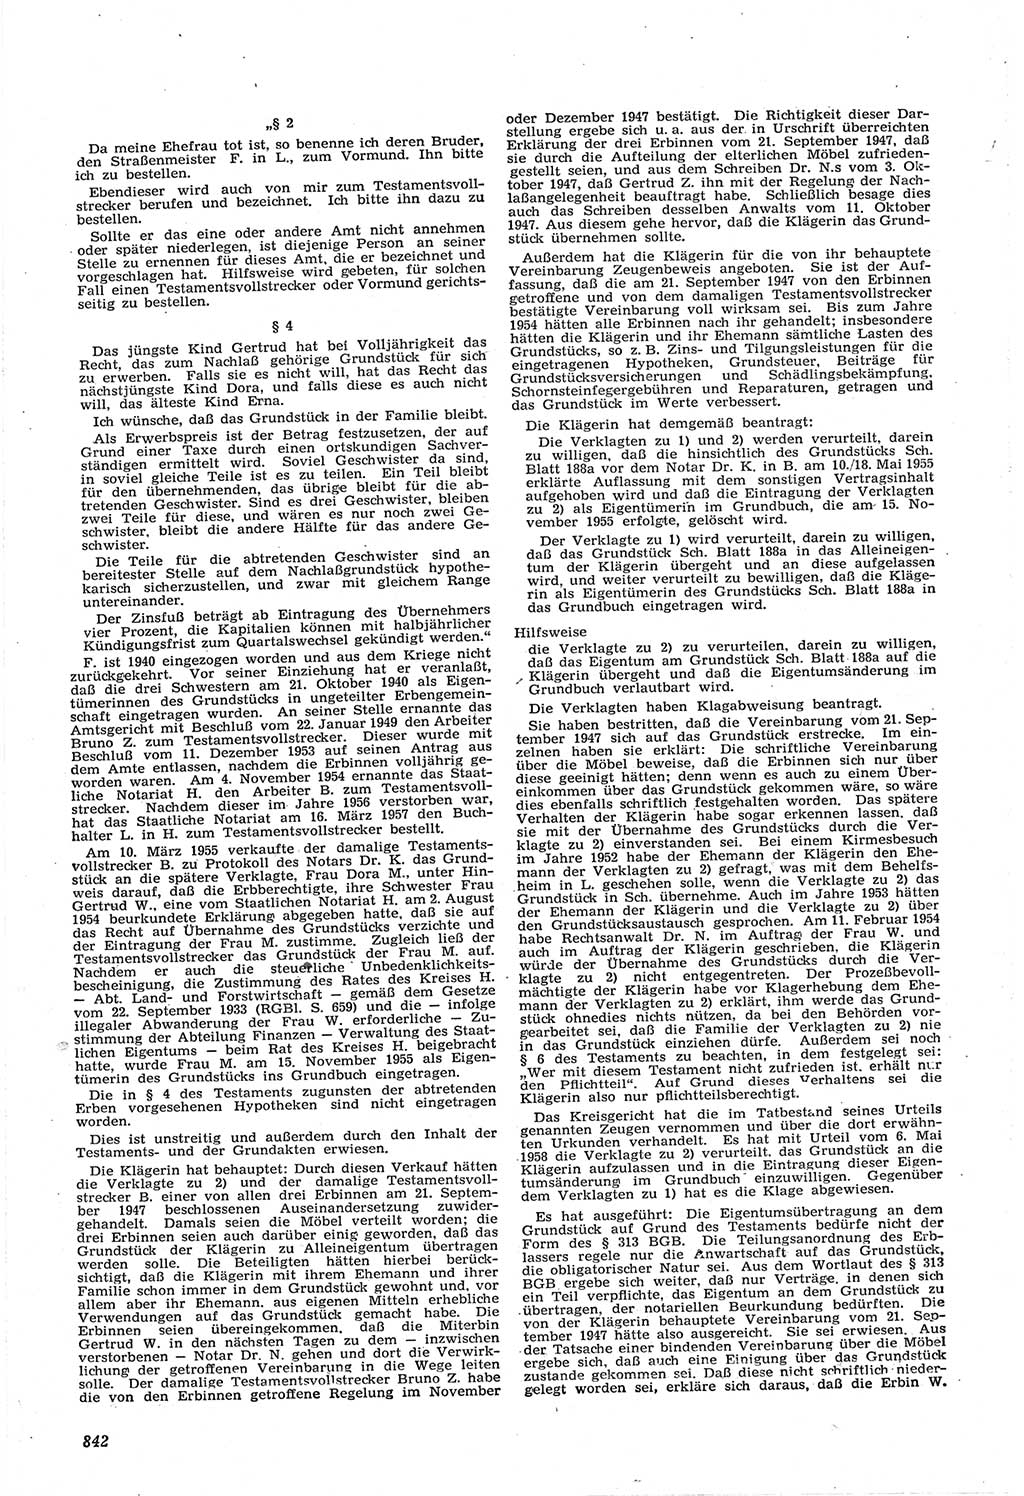 Neue Justiz (NJ), Zeitschrift für Recht und Rechtswissenschaft [Deutsche Demokratische Republik (DDR)], 14. Jahrgang 1960, Seite 842 (NJ DDR 1960, S. 842)